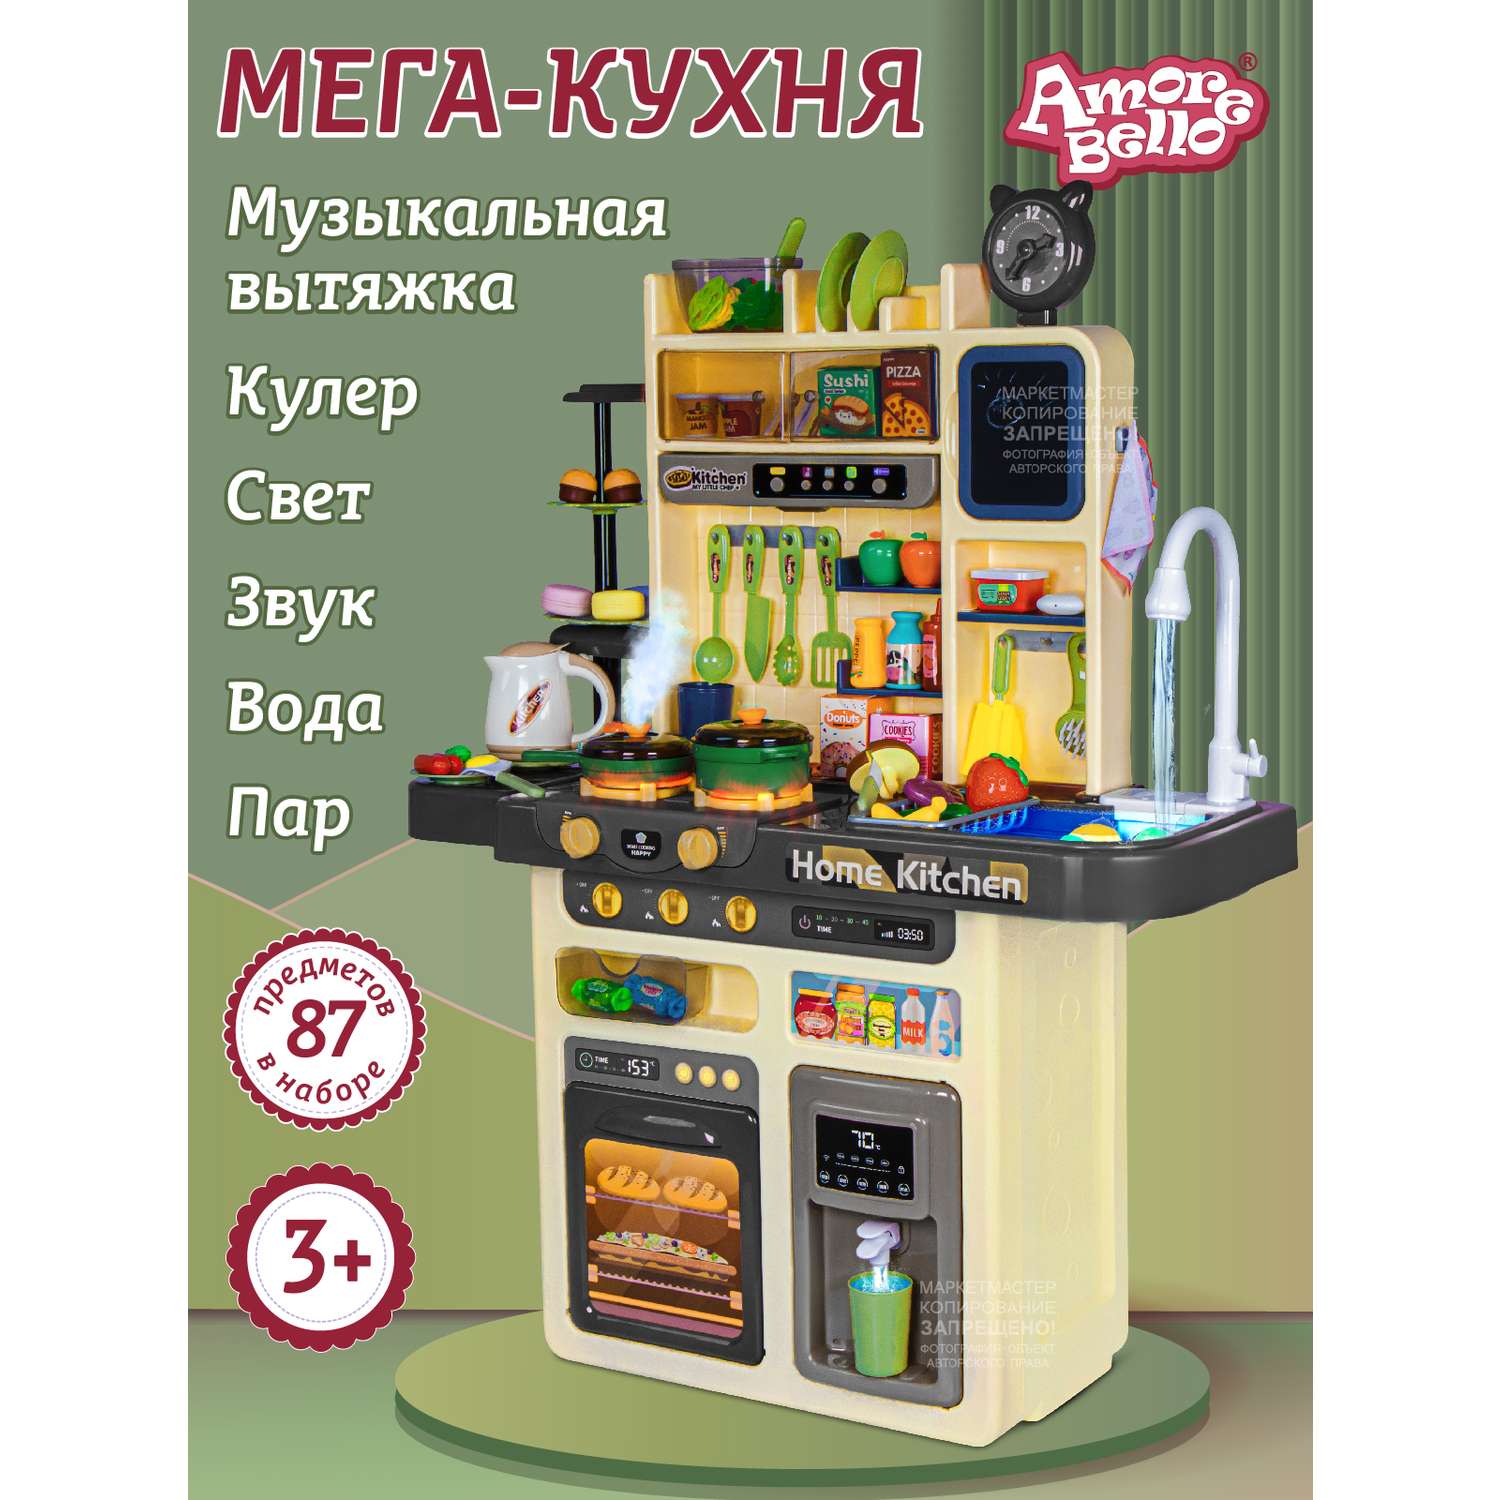 Игровой набор детский AMORE BELLO Кухня со световыми и звуковыми эффектами паром кран-помпа - фото 1